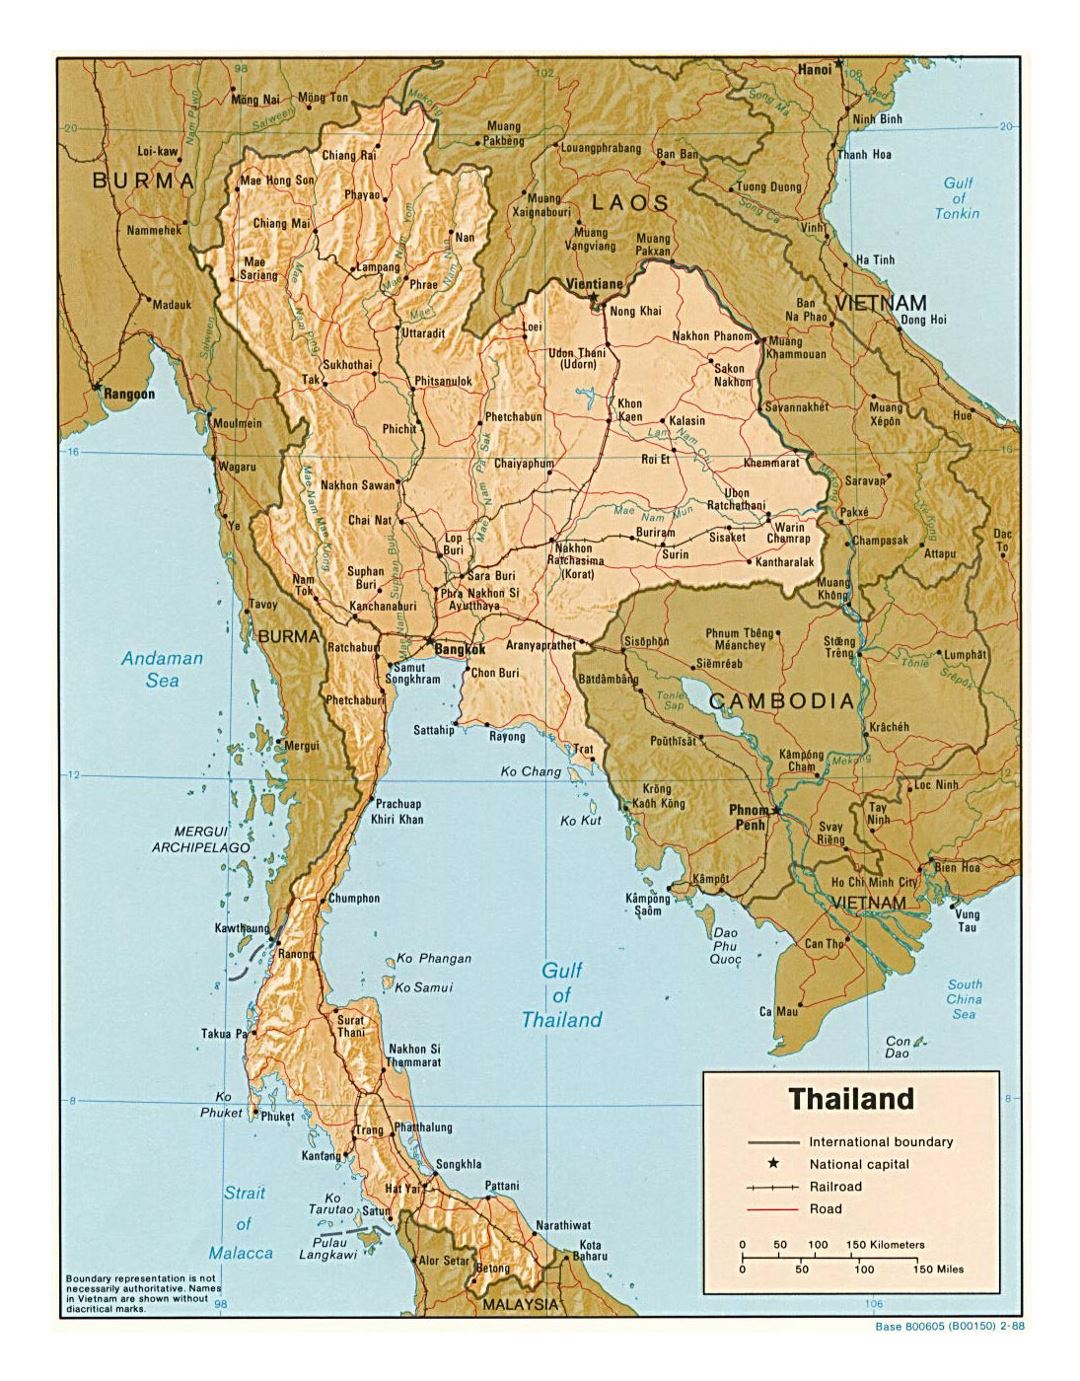 Детальная политическая карта Таиланда с рельефом, дорогами, железными дорогами и крупными городами - 1988